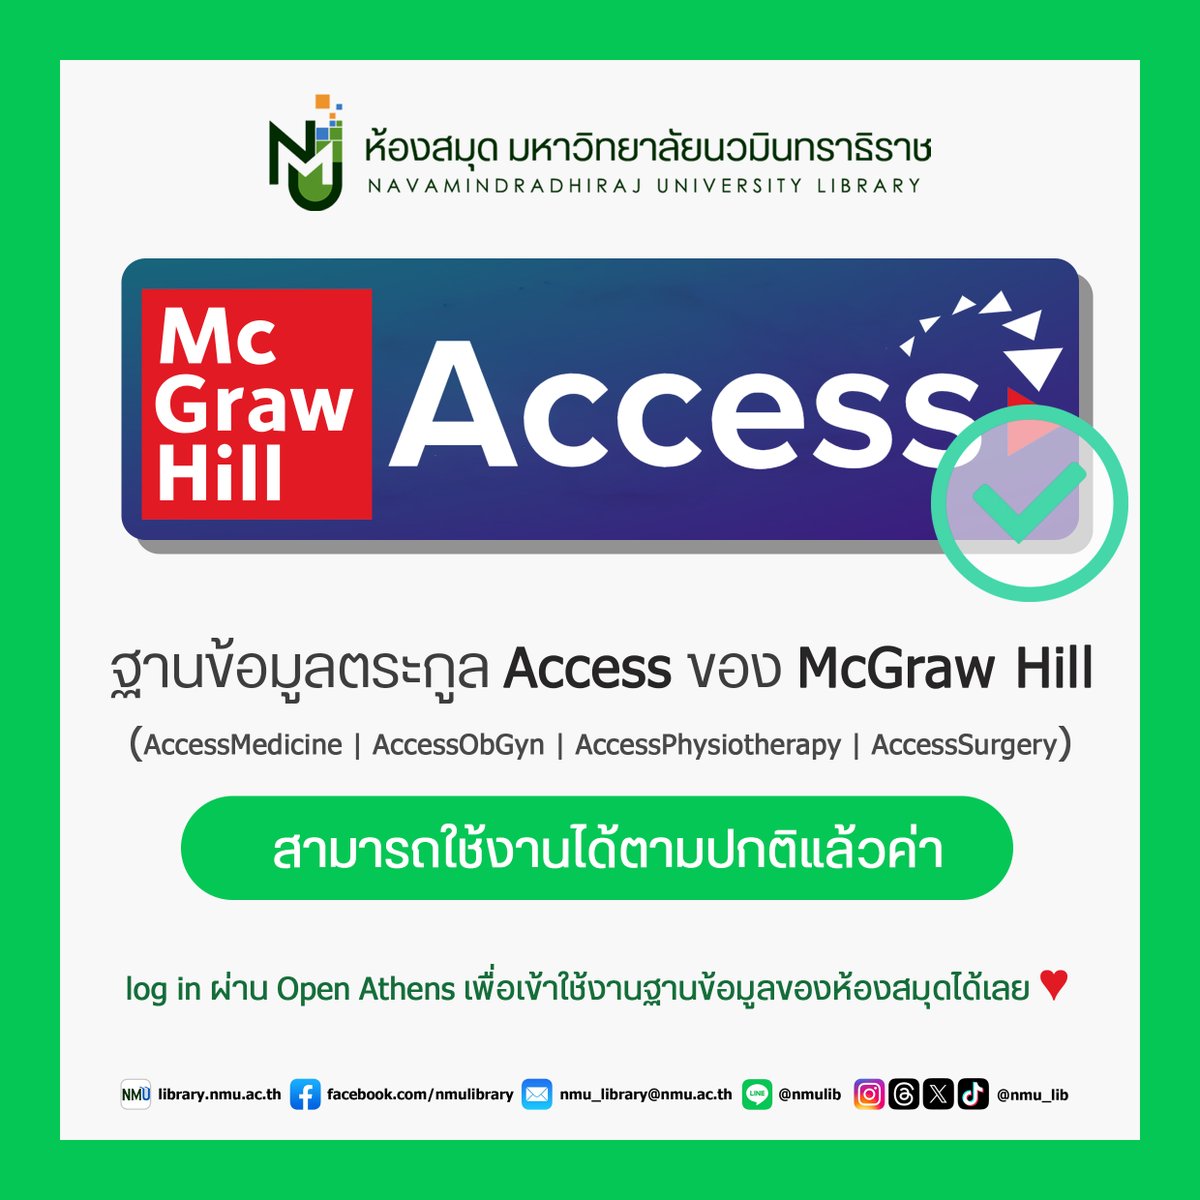 📢ประกาศ📢 ขณะนี้ฐานข้อมูลตระกูล Access ของ McGraw Hill (AccessMedicine, AccessObGyn, AccessPhysiotheraphy, AccessSurgery) ✅สามารถใช้งานได้ตามปกติแล้วค่าาา ✅#NMUWisdomSpace #มหาลัยนวมินทราธิราช